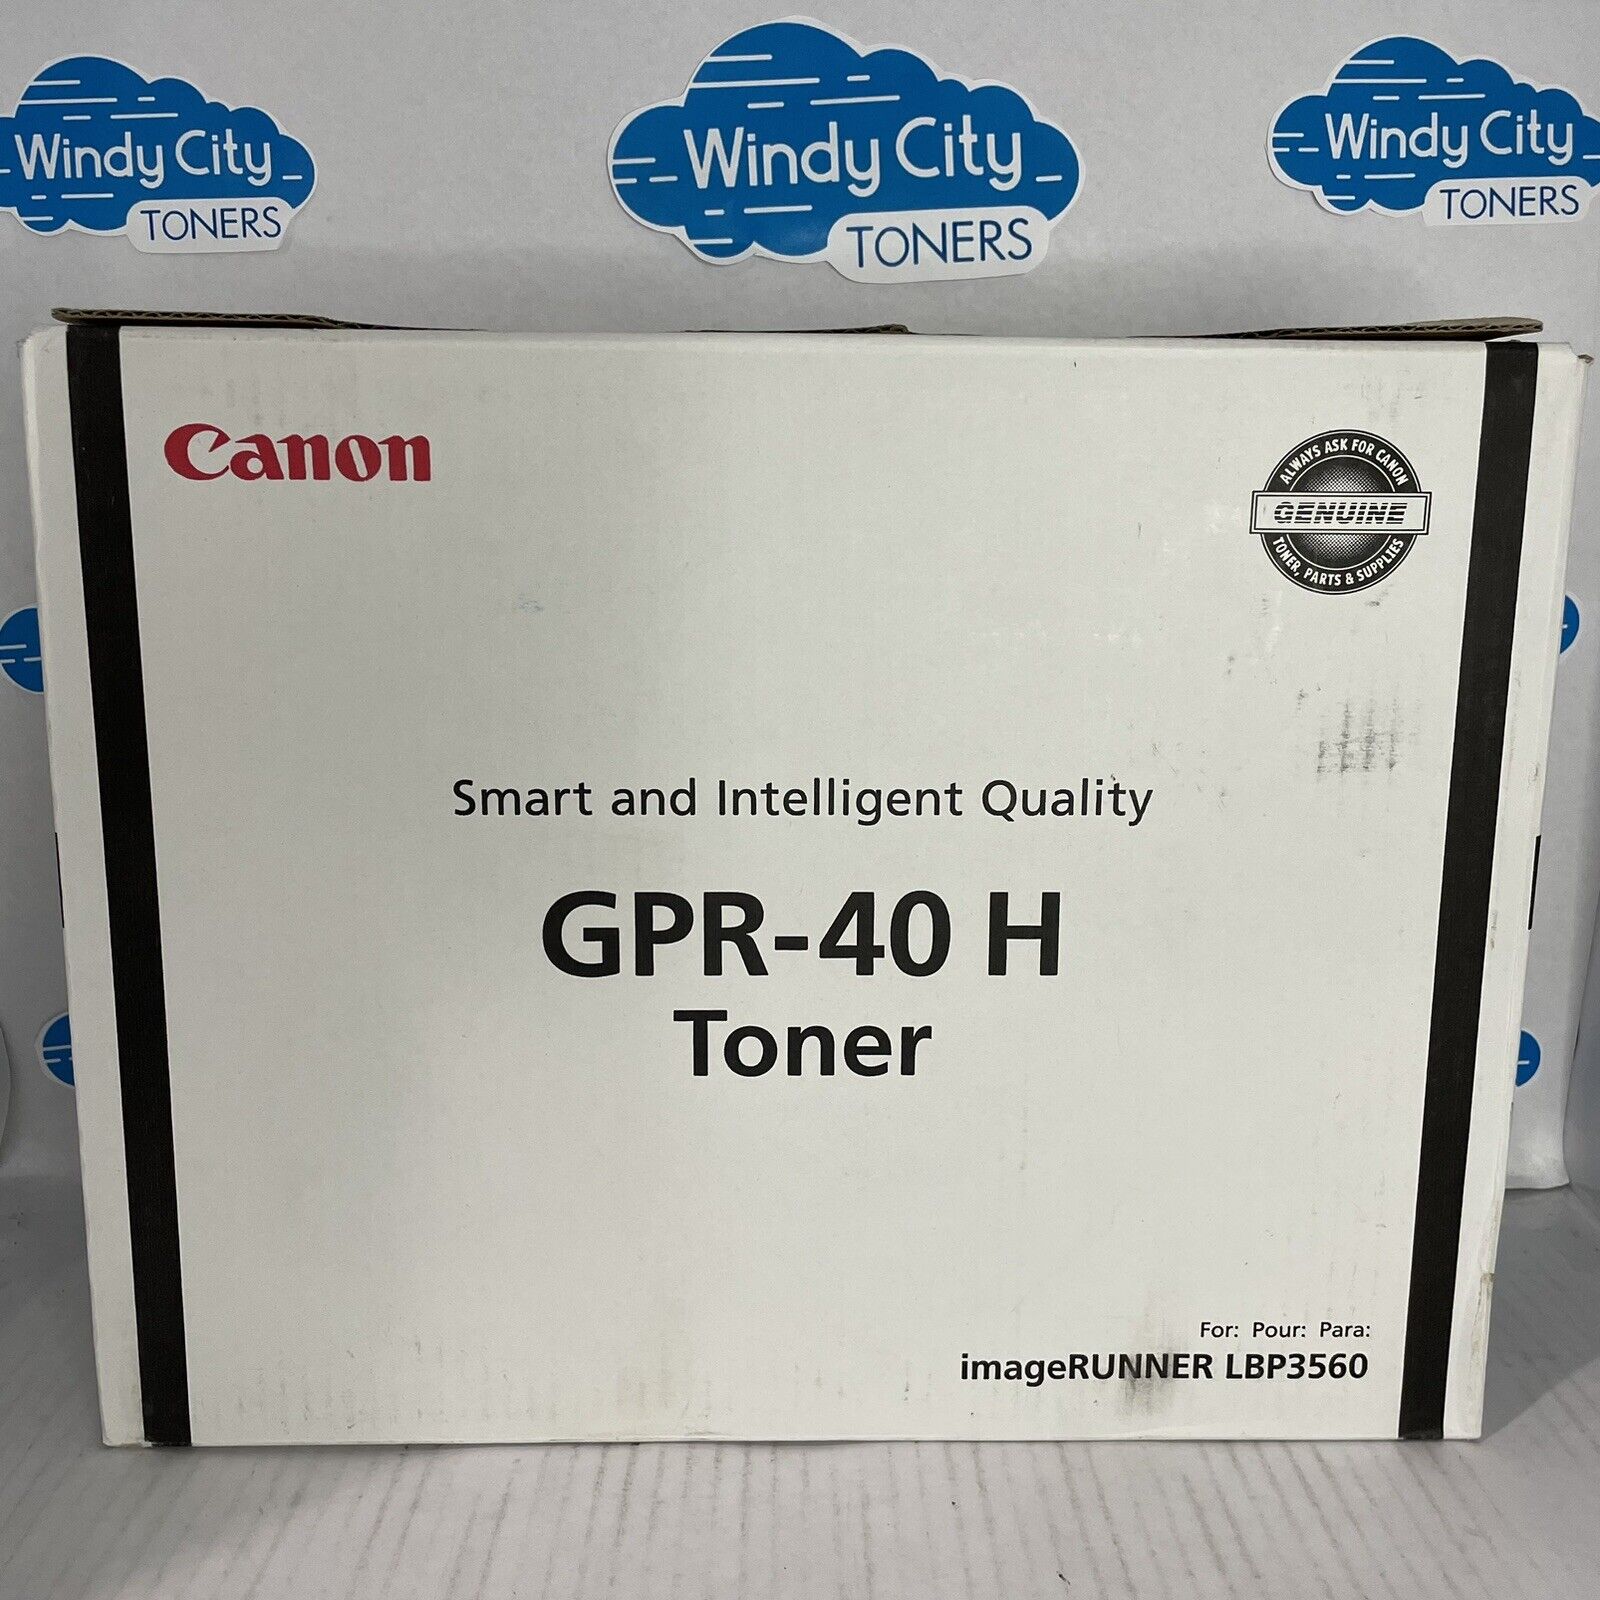 Canon GPR-40 H 3482B005 Black Toner Cartridge ImageRunner LBP3560 New Open Box